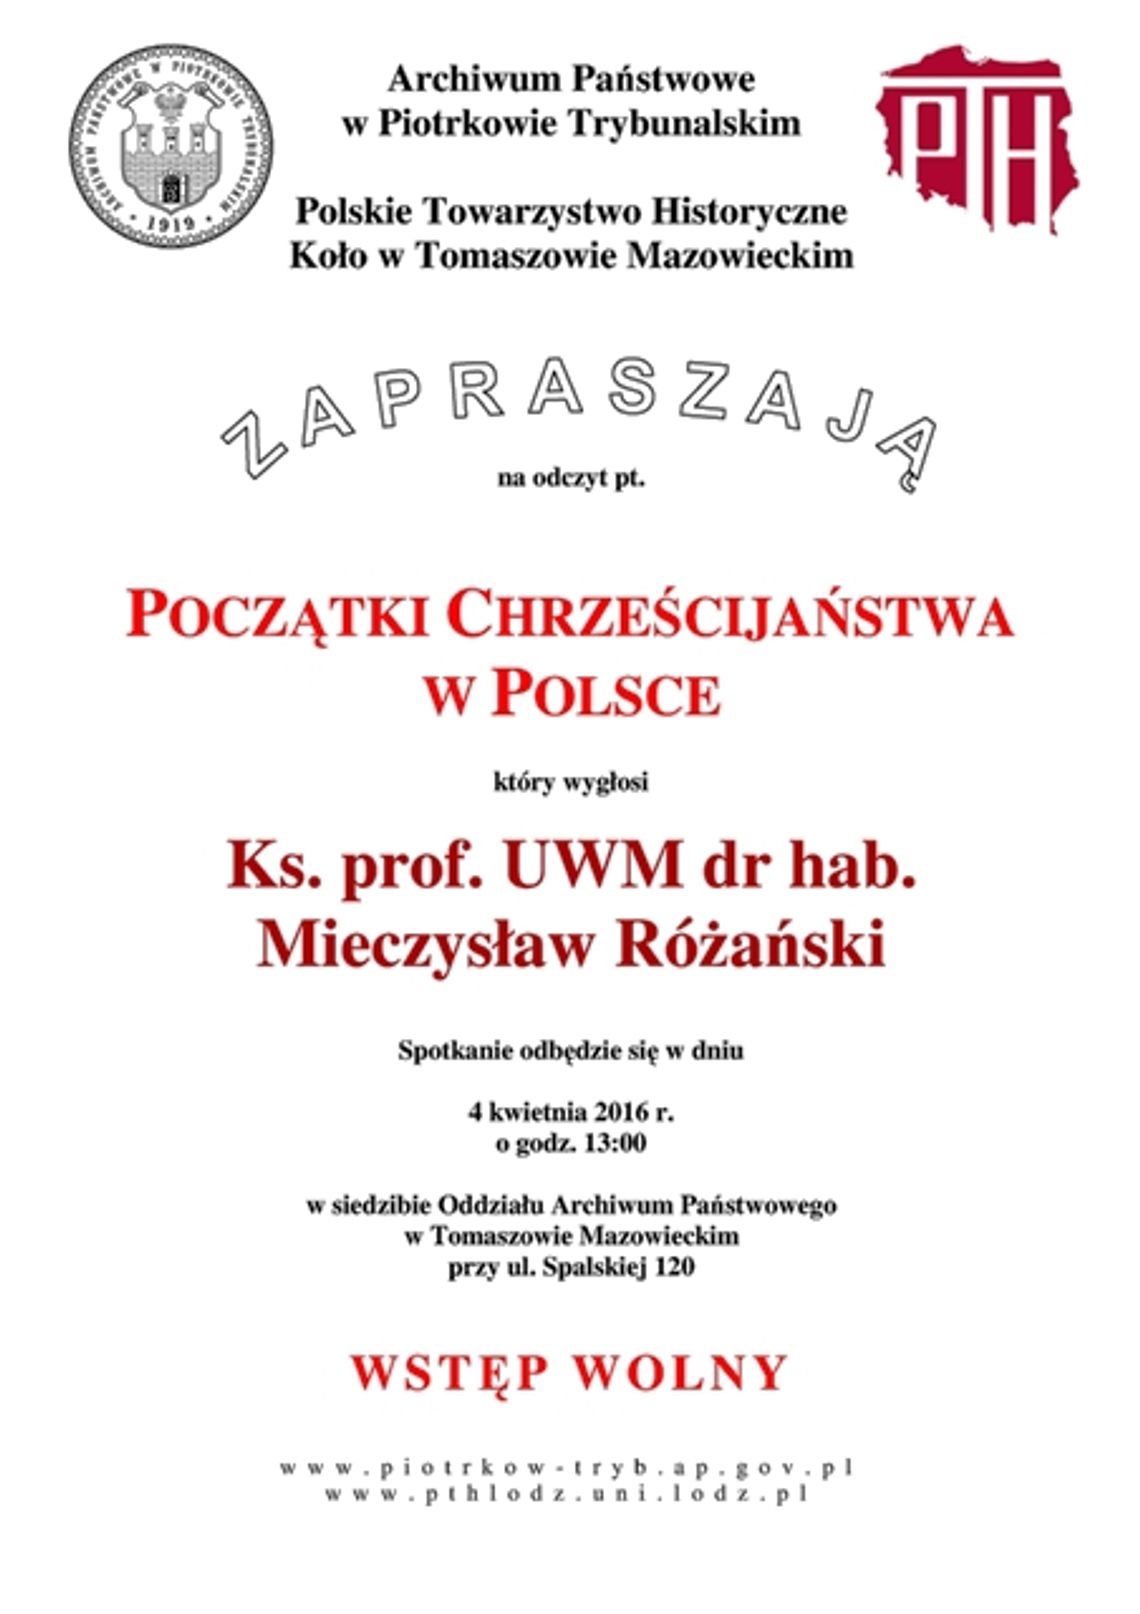 O początkach Chrześcijaństwa w Polsce